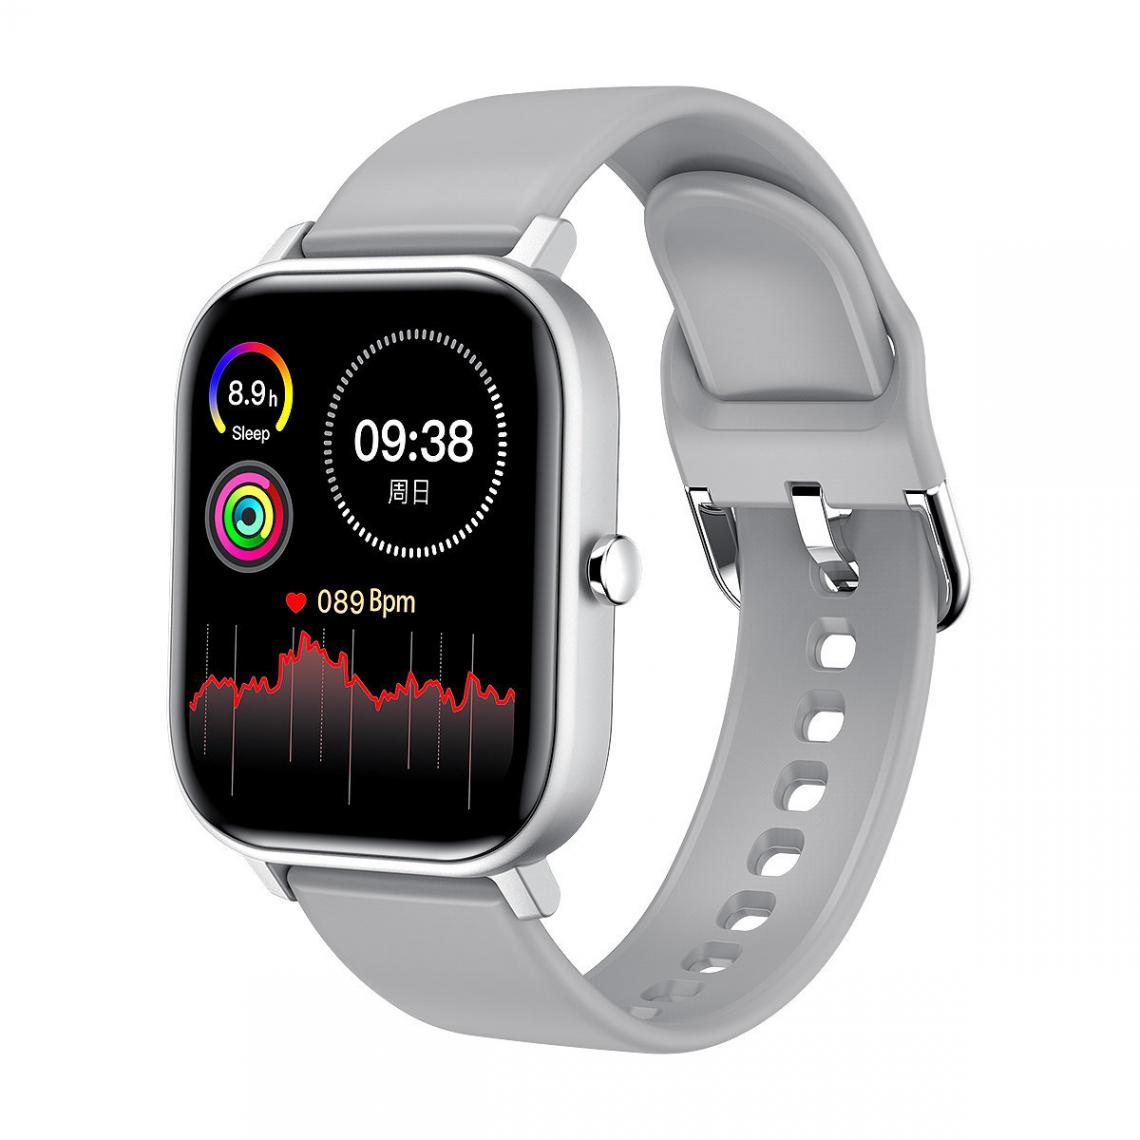 Chrono - Montre Connectée Femme Homme IP68 étanche Smartwatch thermomètre moniteur de fréquence cardiaque sport Fitness pour Android iOS-Gris - Montre connectée